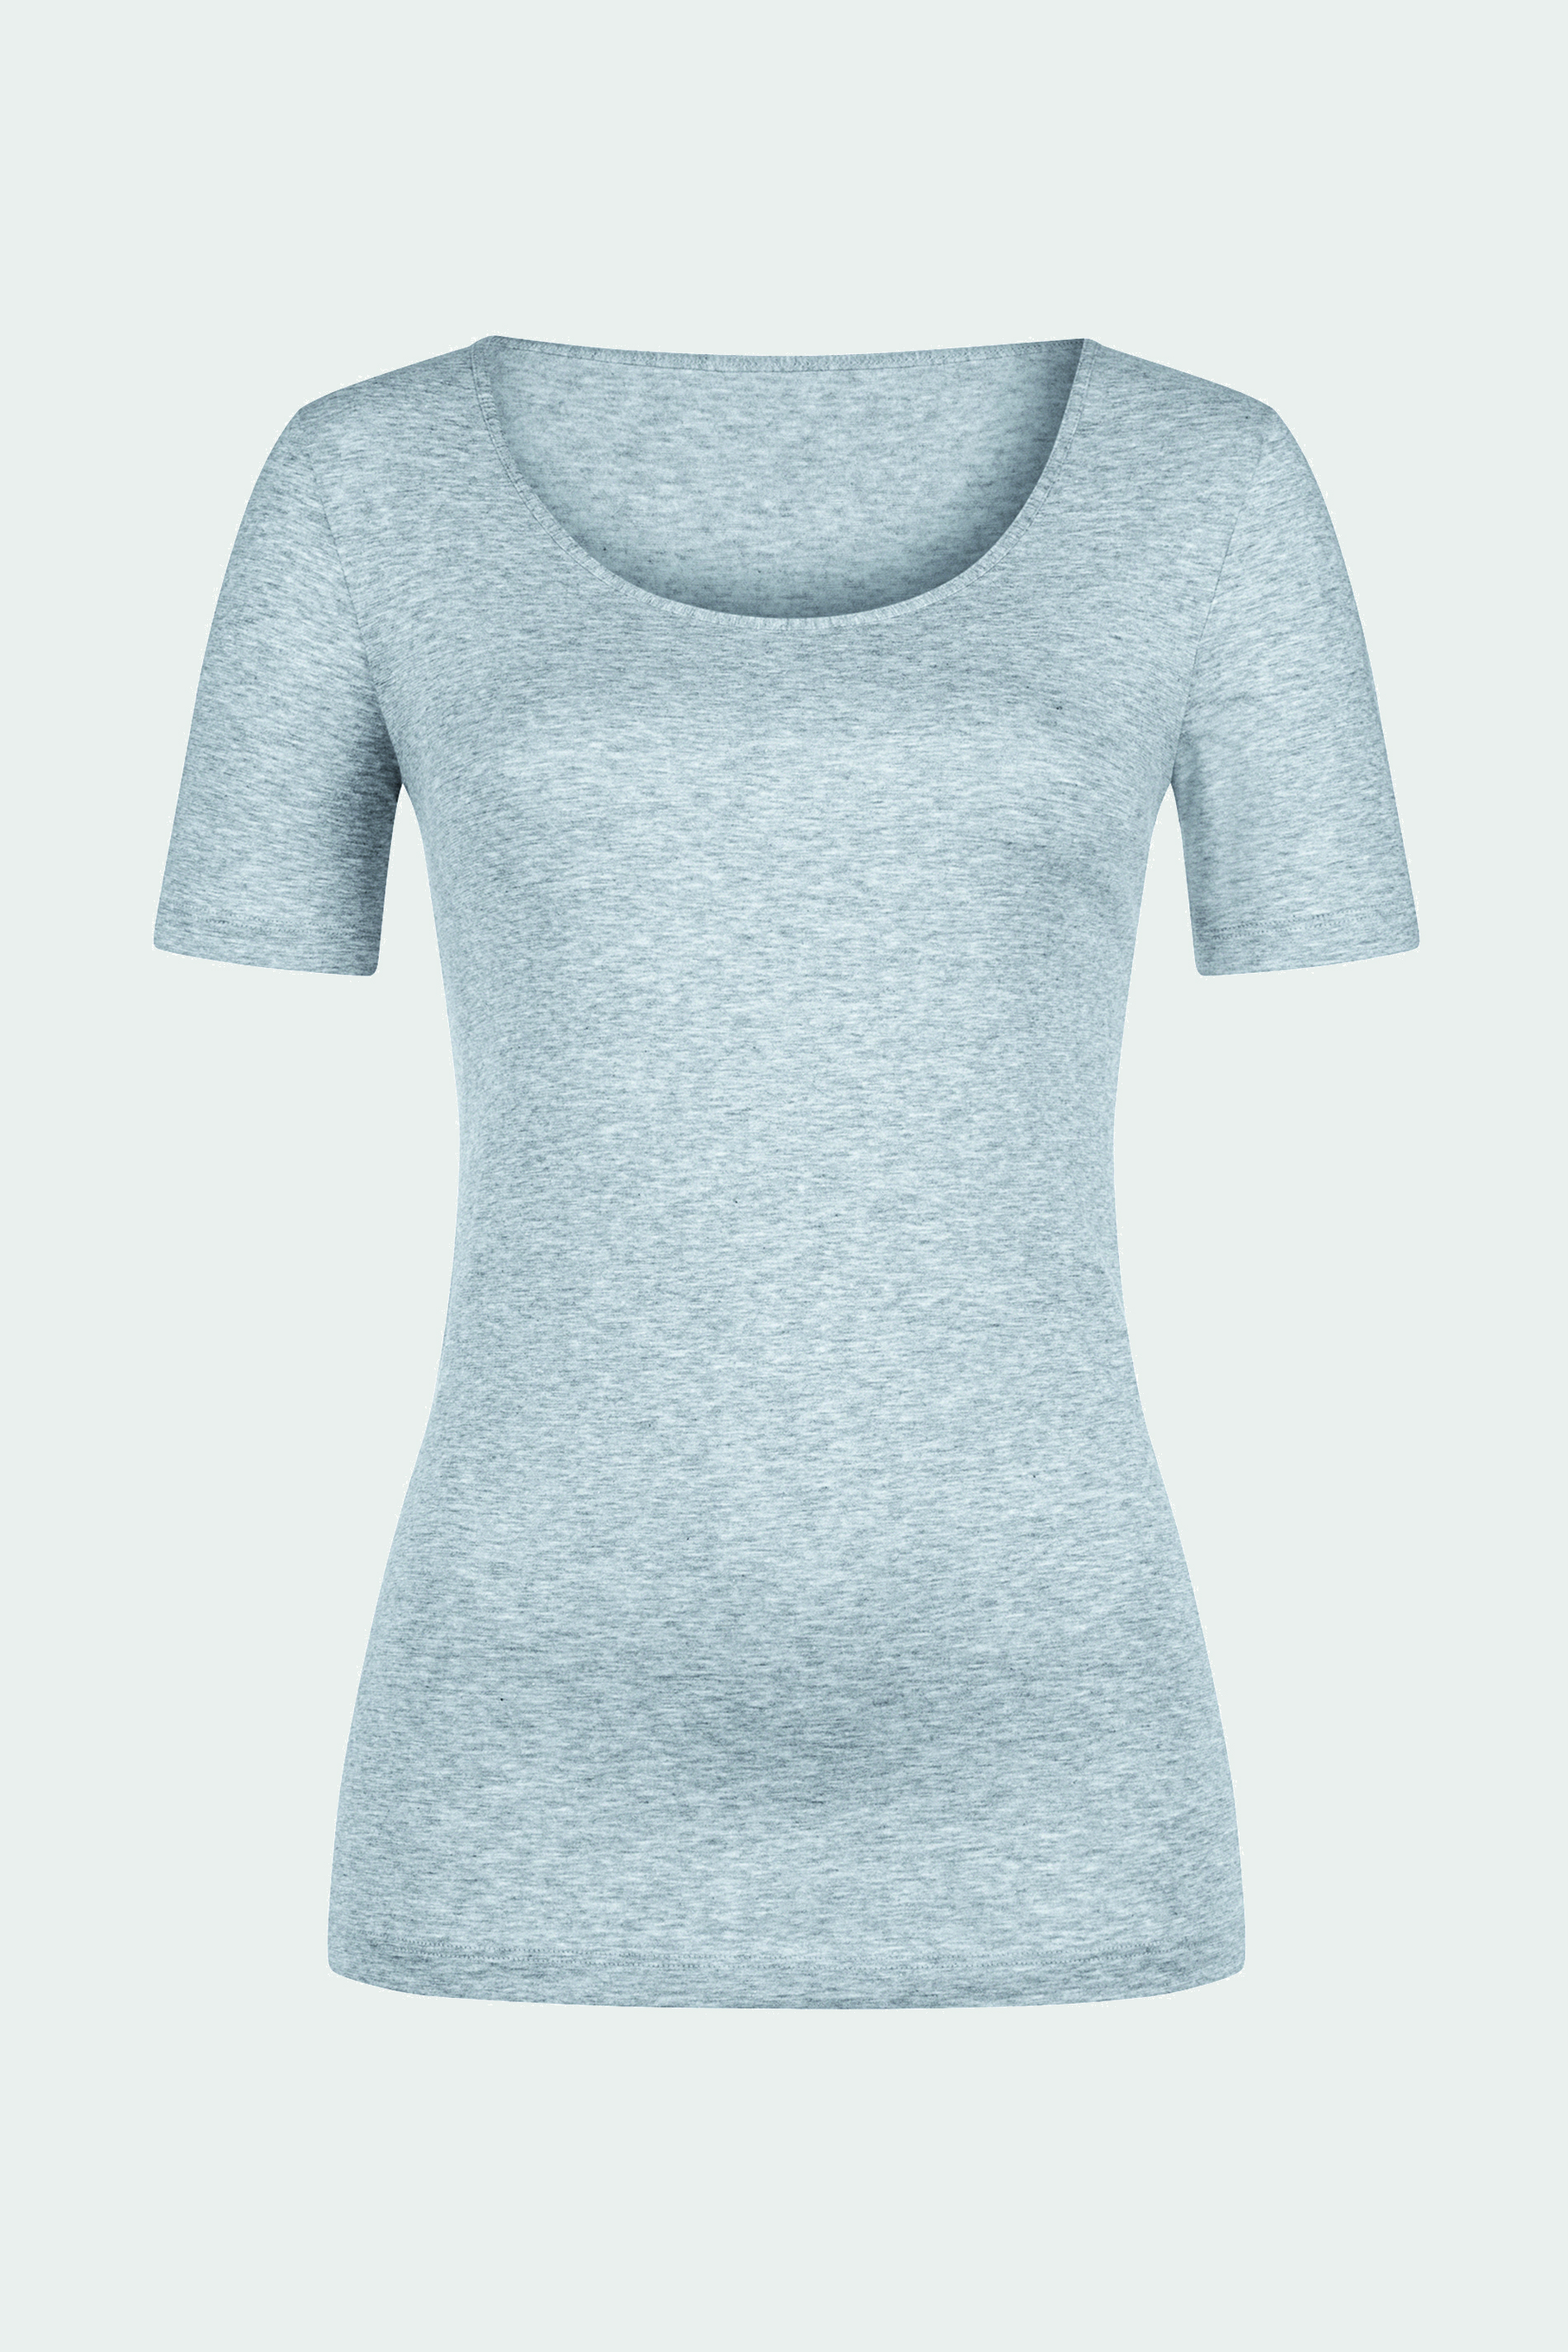 Shirt kurzarm Light Grey Melange Serie Cotton Pure Freisteller | mey®